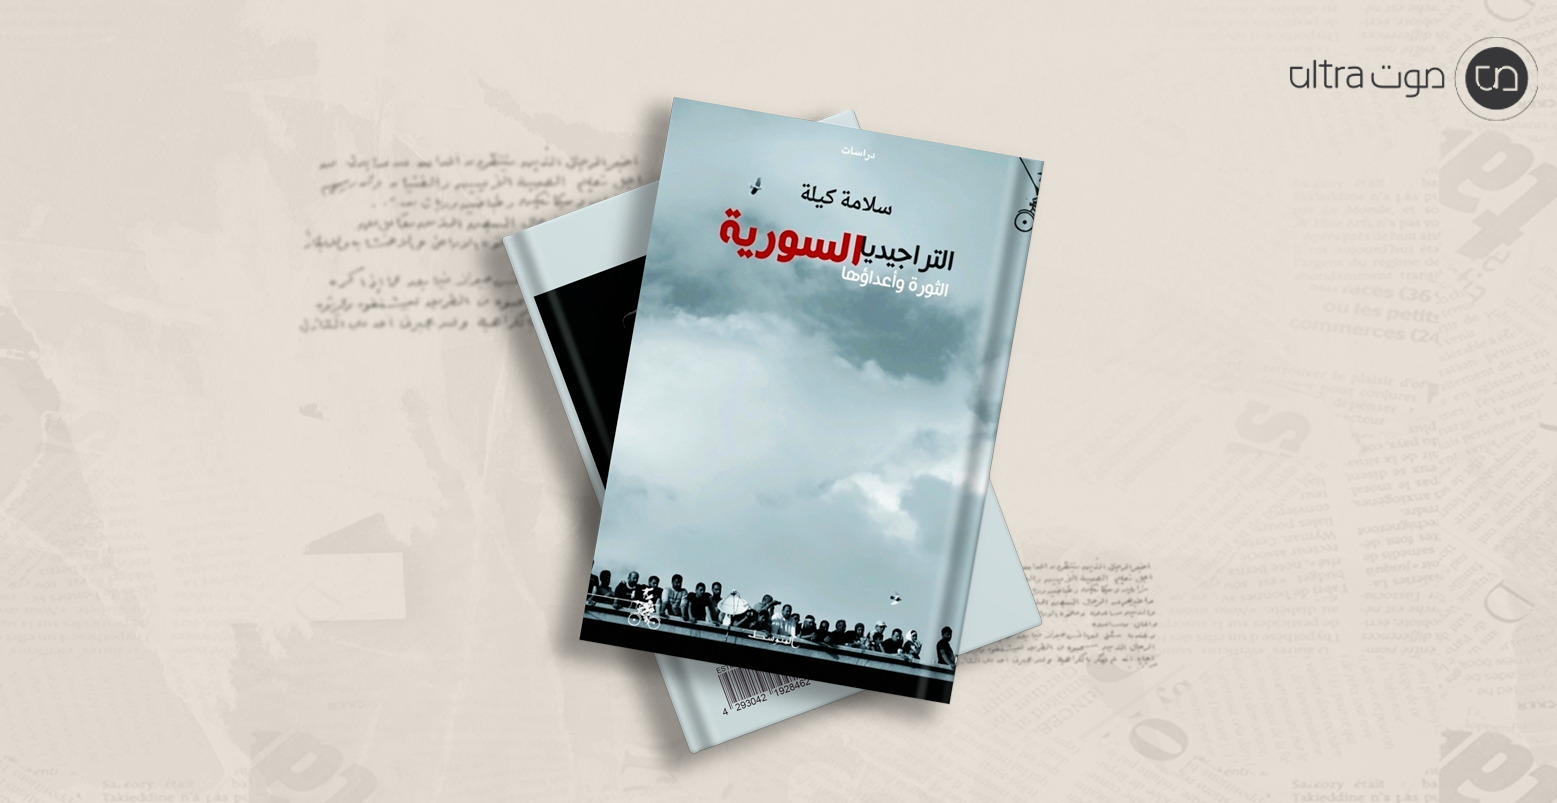 التراجيديا السورية: الثورة وأعداؤها